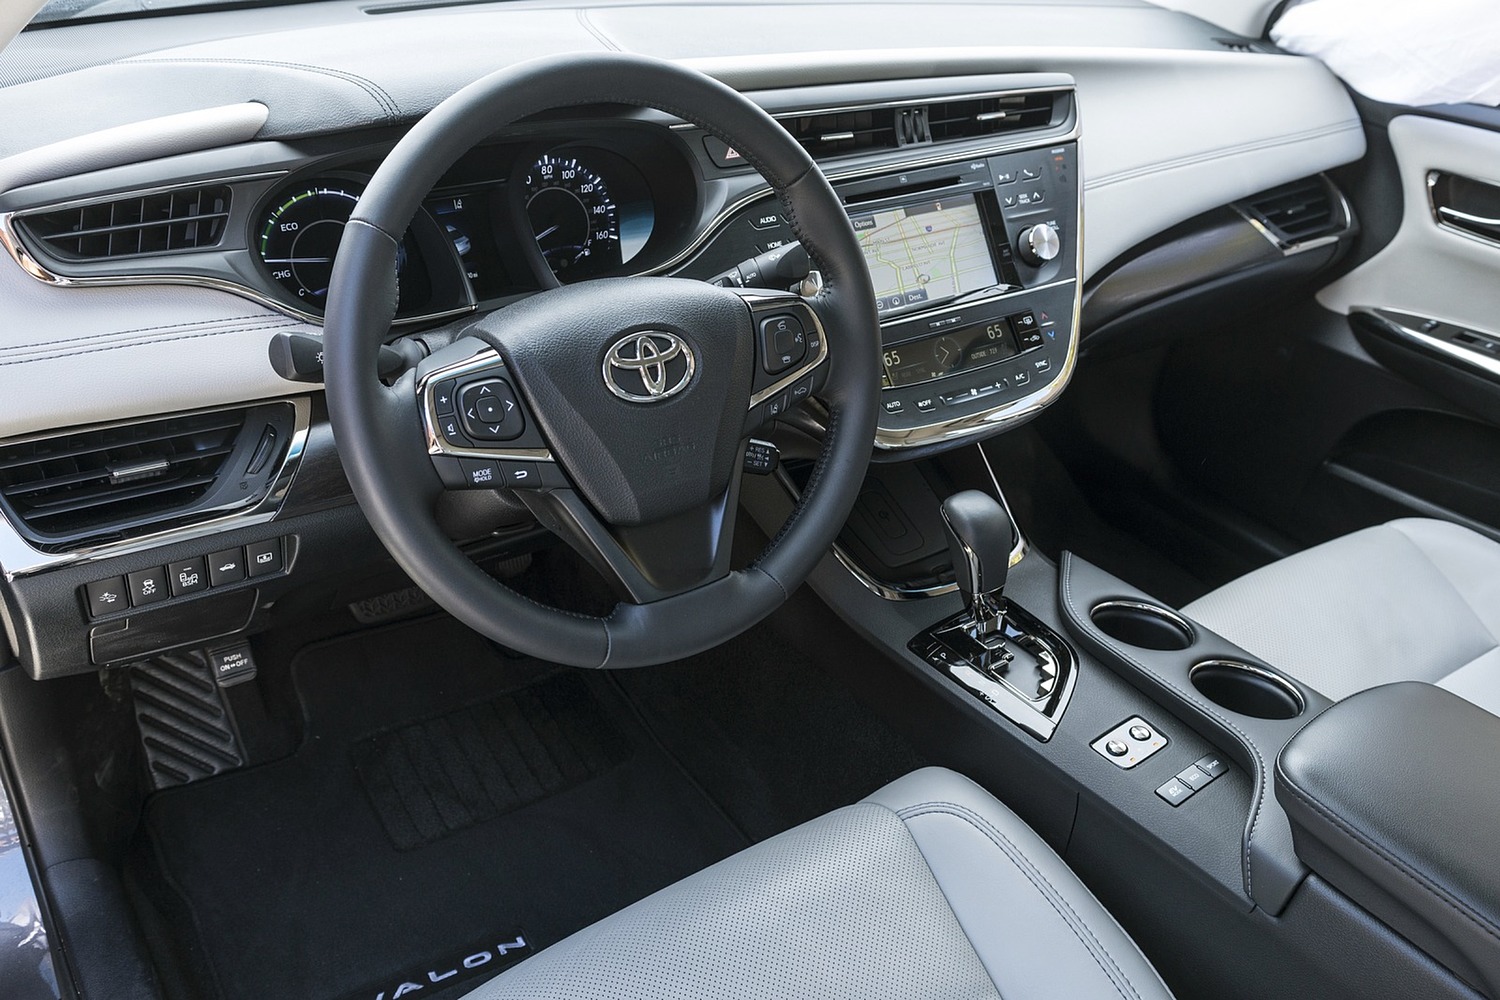 Toyota Avalon Hybrid Sedan Steering Wheel Detail (2017 model year shown)